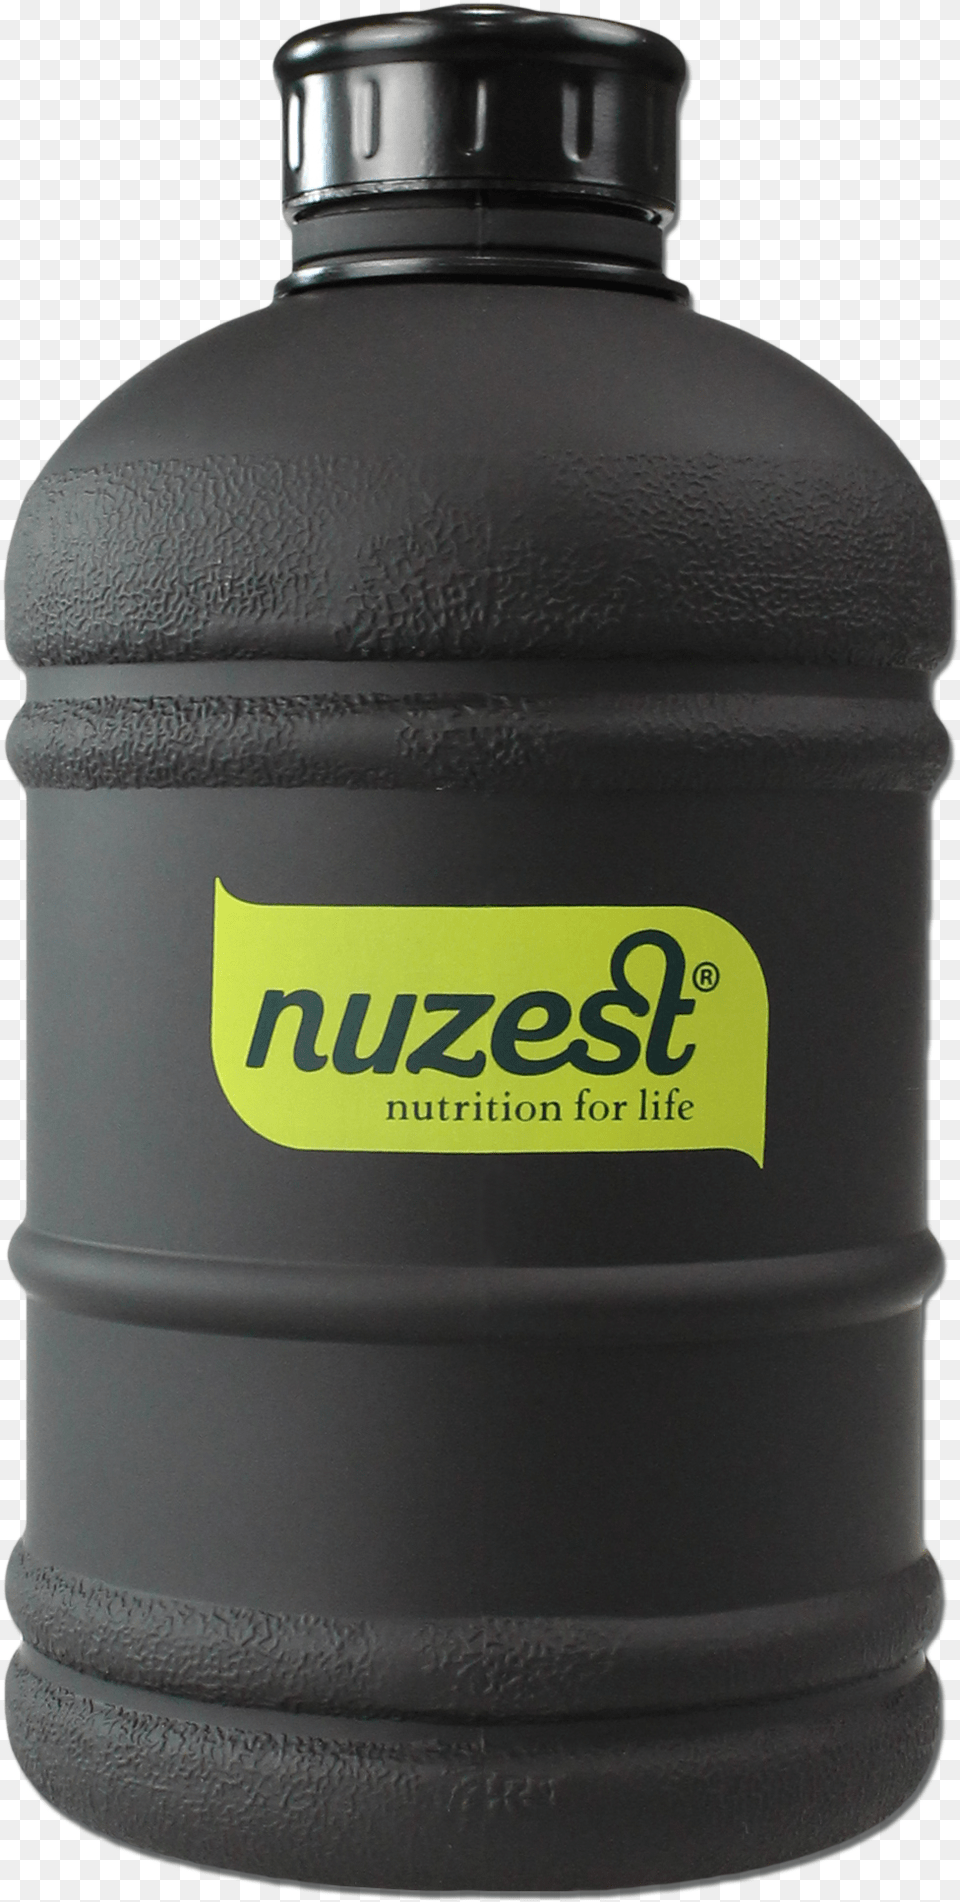 Nuzest, Bottle, Shaker, Jug Png Image